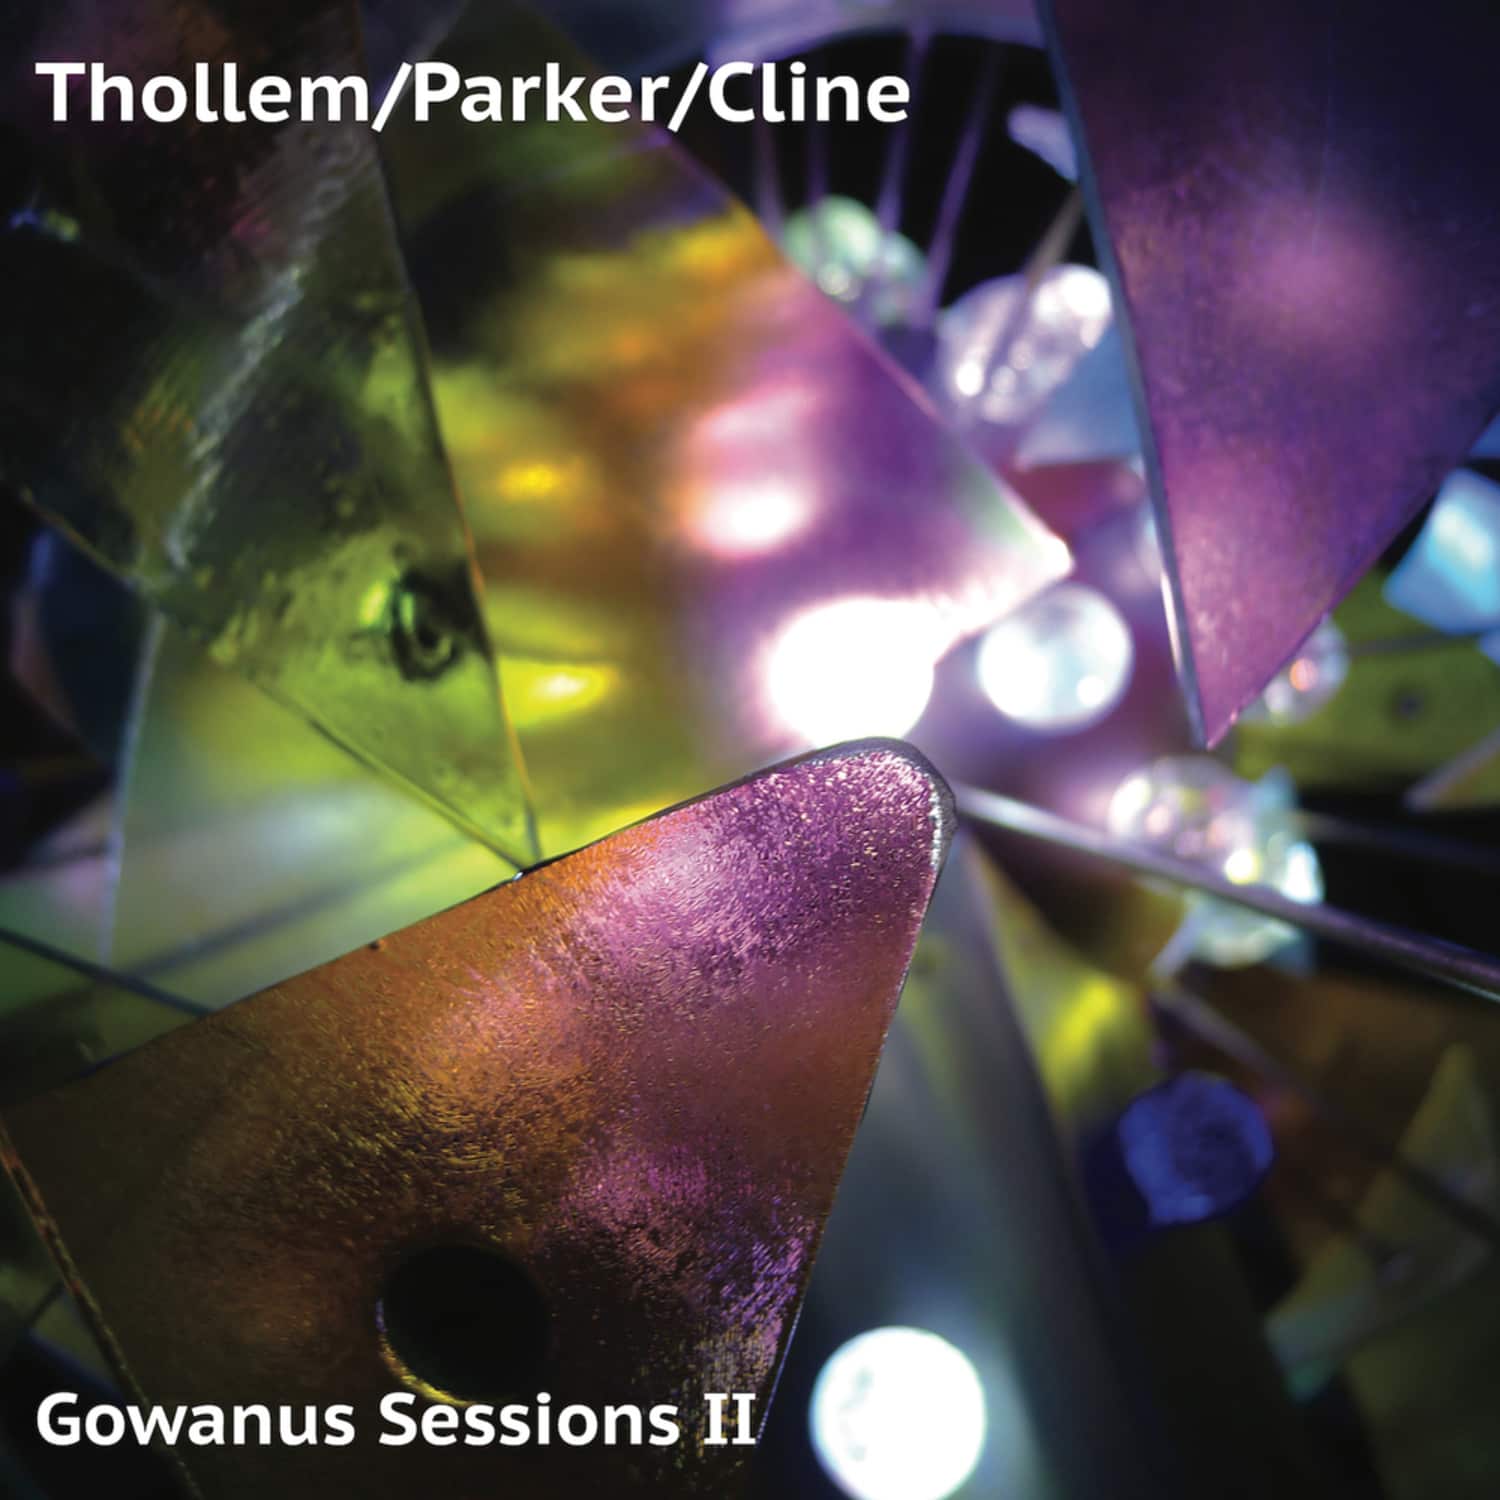 Thollem / Parker / Cline - GOWANUS SESSIONS II 